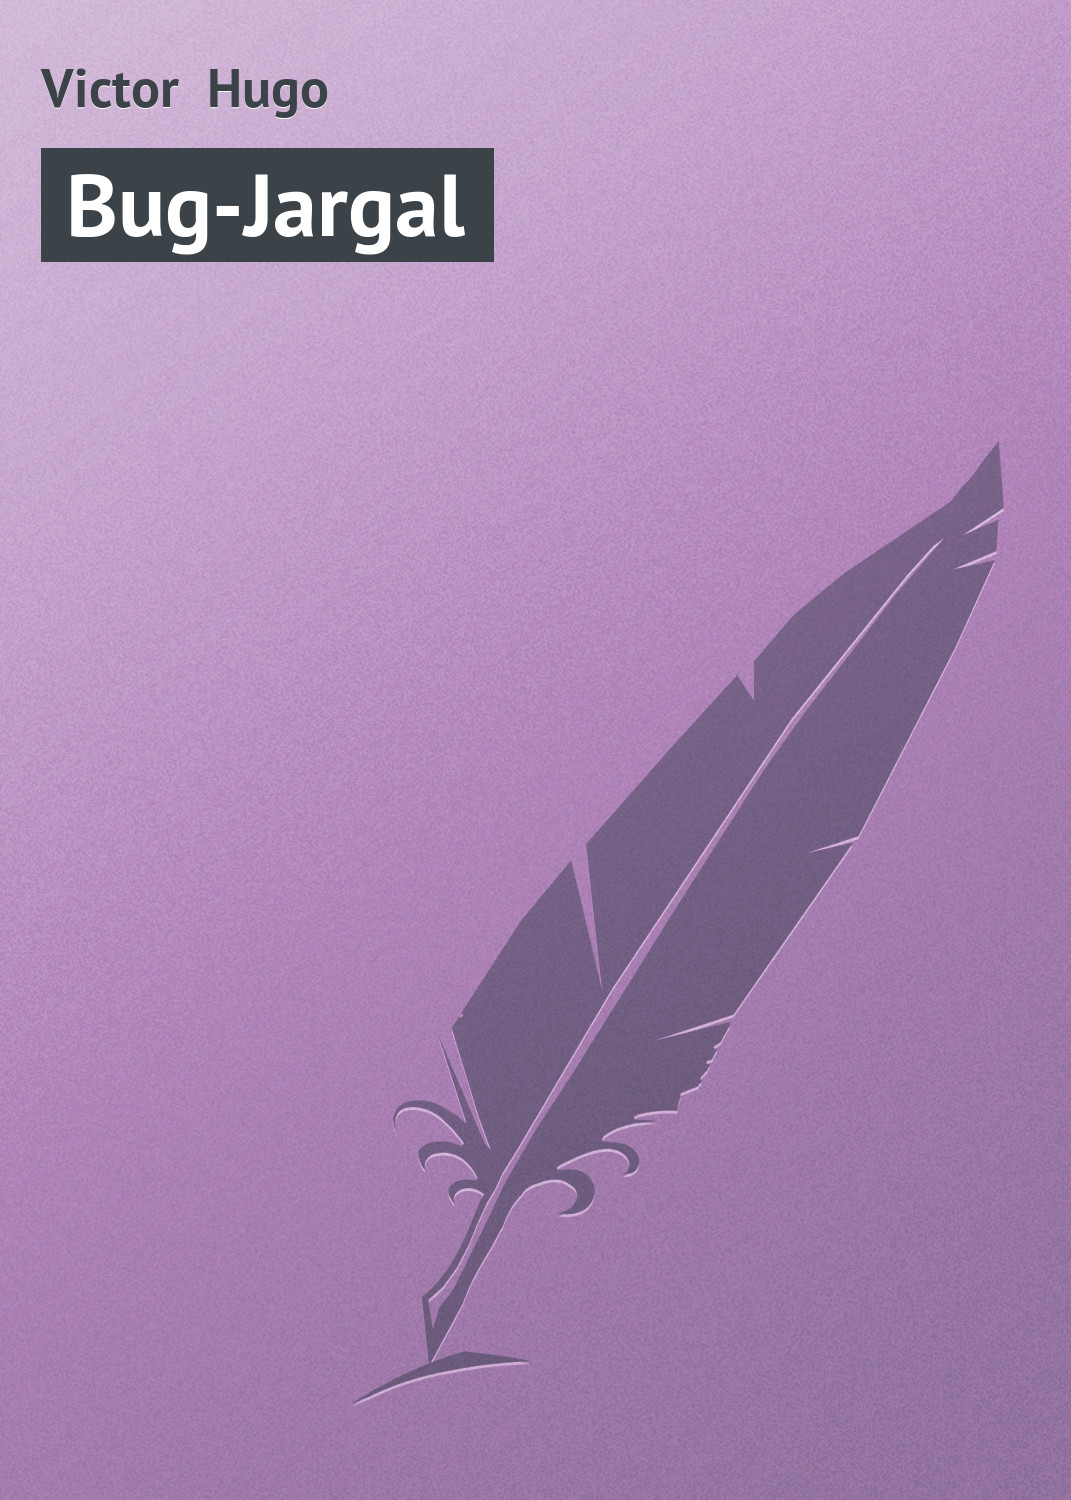 Книга Bug-Jargal из серии , созданная Victor Hugo, может относится к жанру Зарубежная старинная литература, Зарубежная классика. Стоимость электронной книги Bug-Jargal с идентификатором 21105070 составляет 5.99 руб.